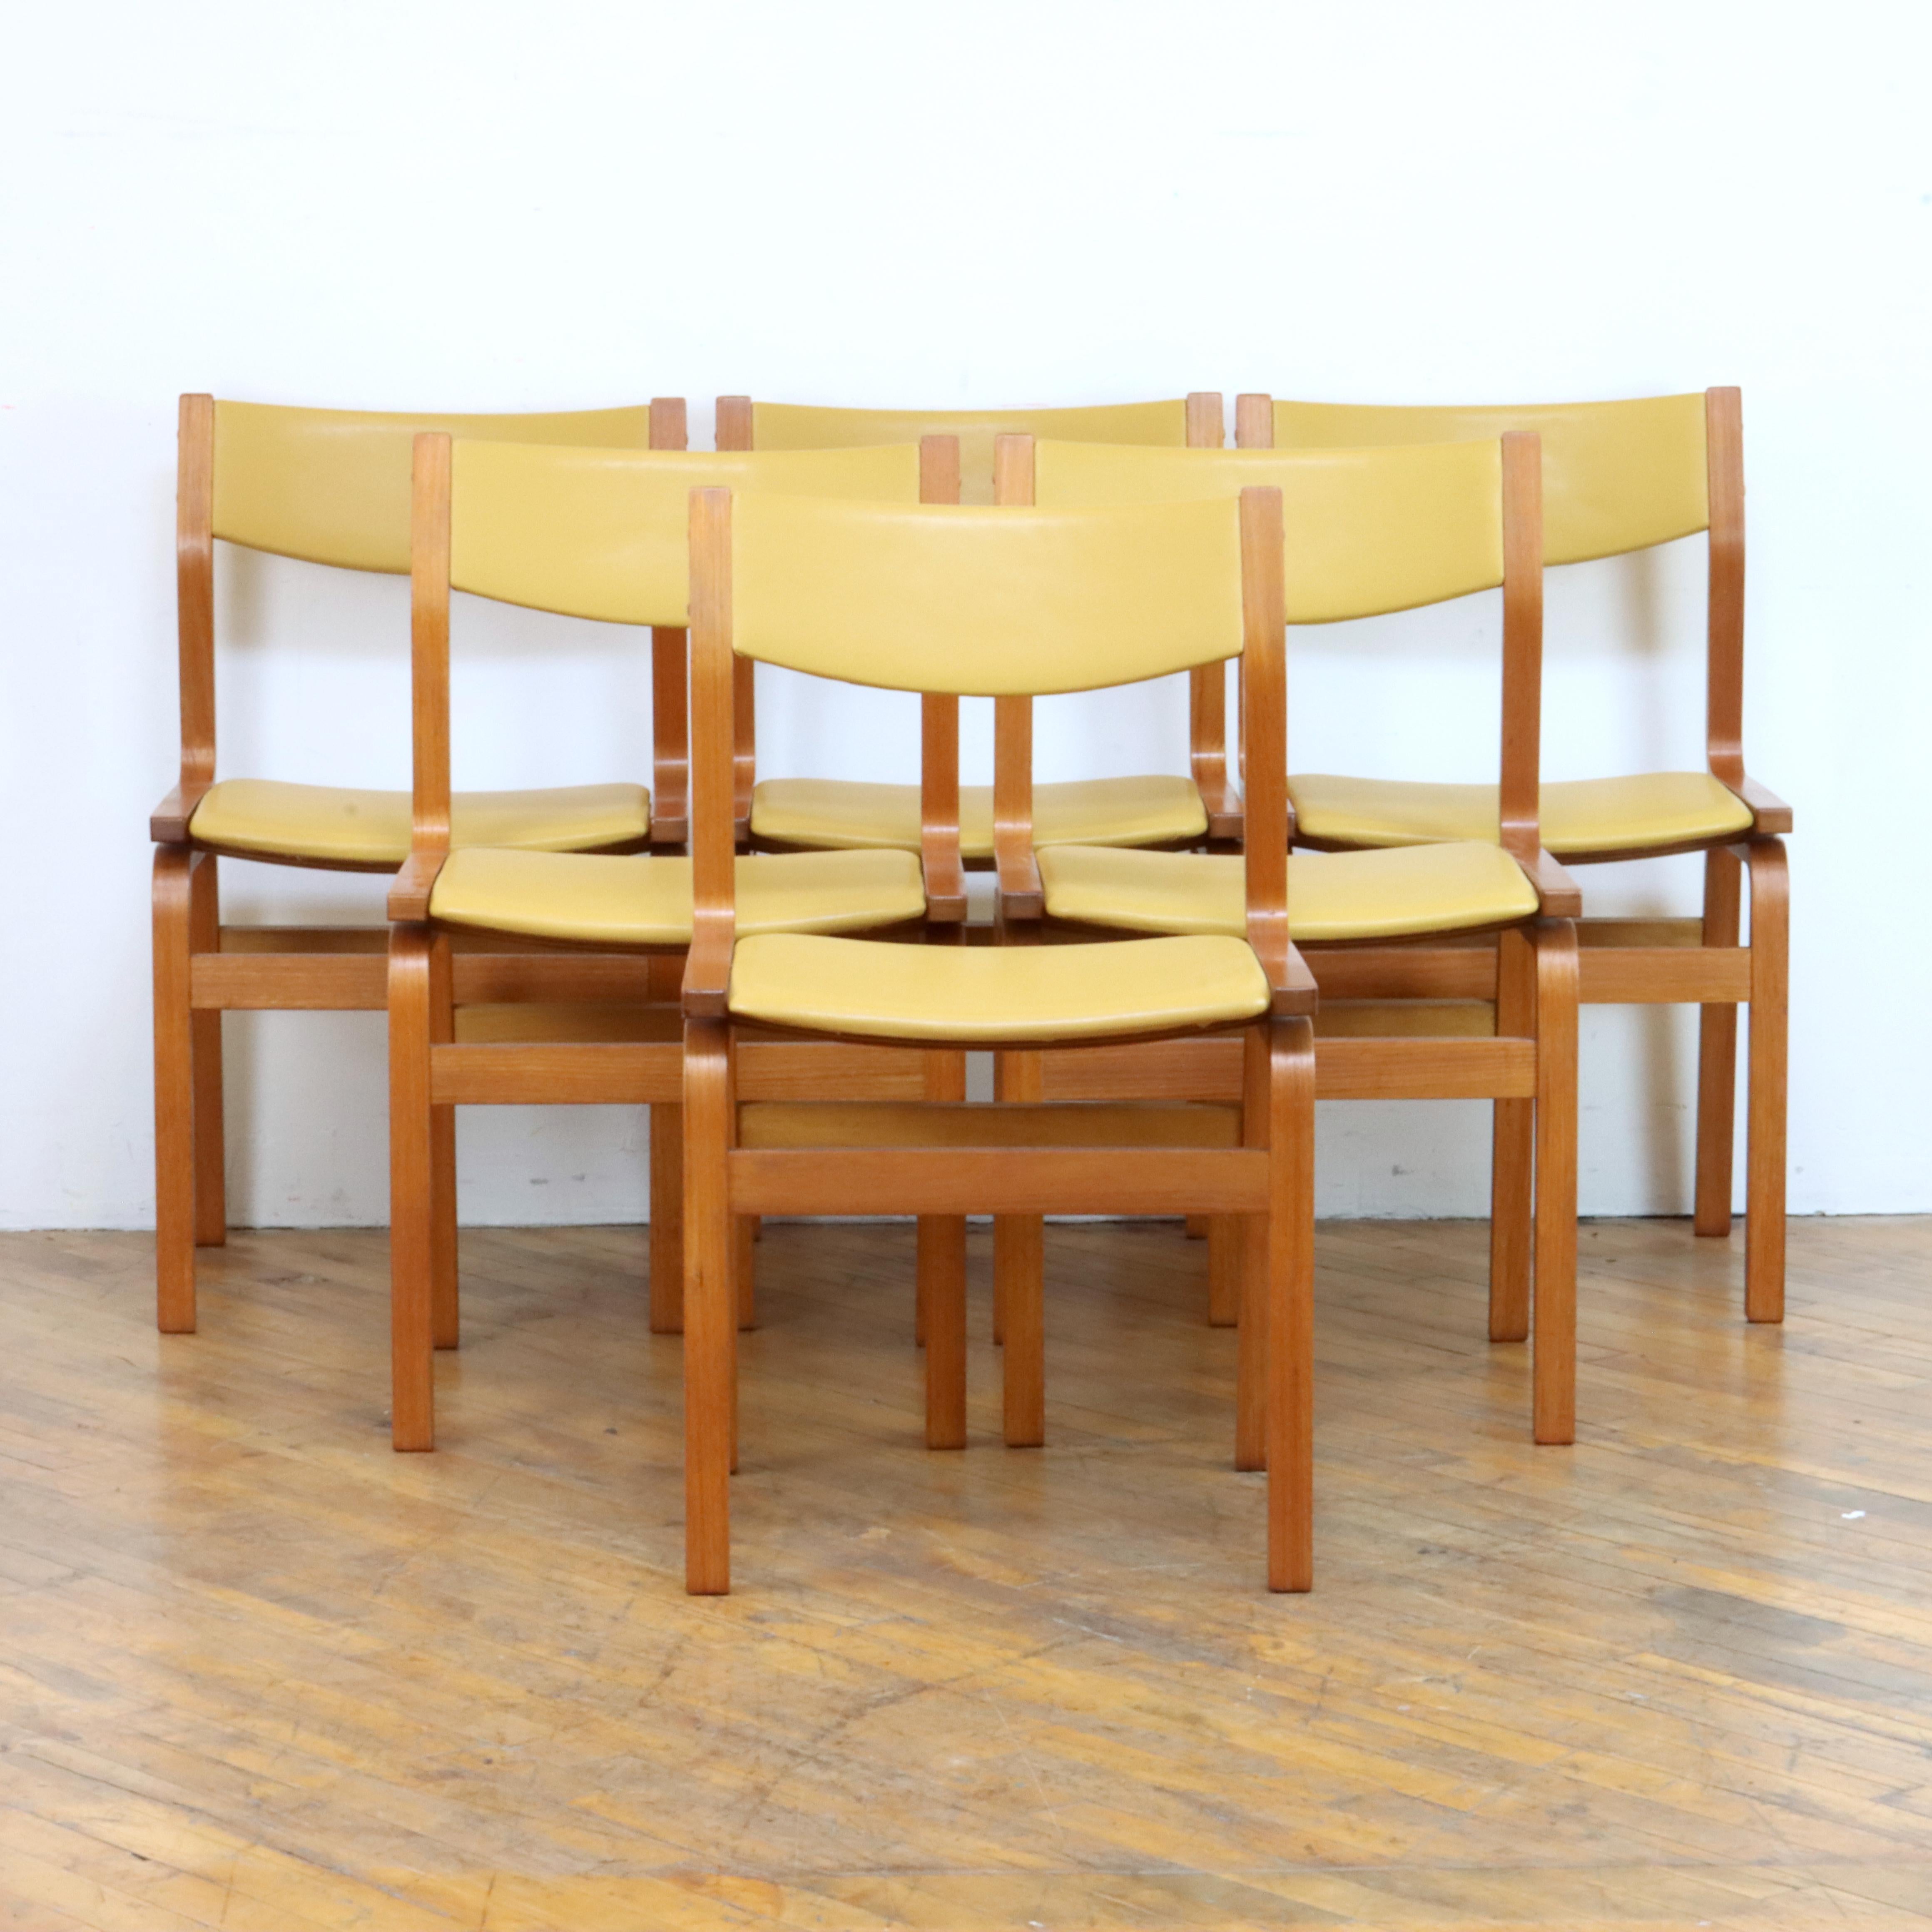 Schöner Satz dänischer Esszimmerstühle nach Arne Jacobsens St. Catherine's Chair, entworfen für das St. Catherine's College in Oxford, England. Die schlichten und eleganten Stühle bestehen aus mit Teakholz furniertem Formsperrholz und wurden gerade